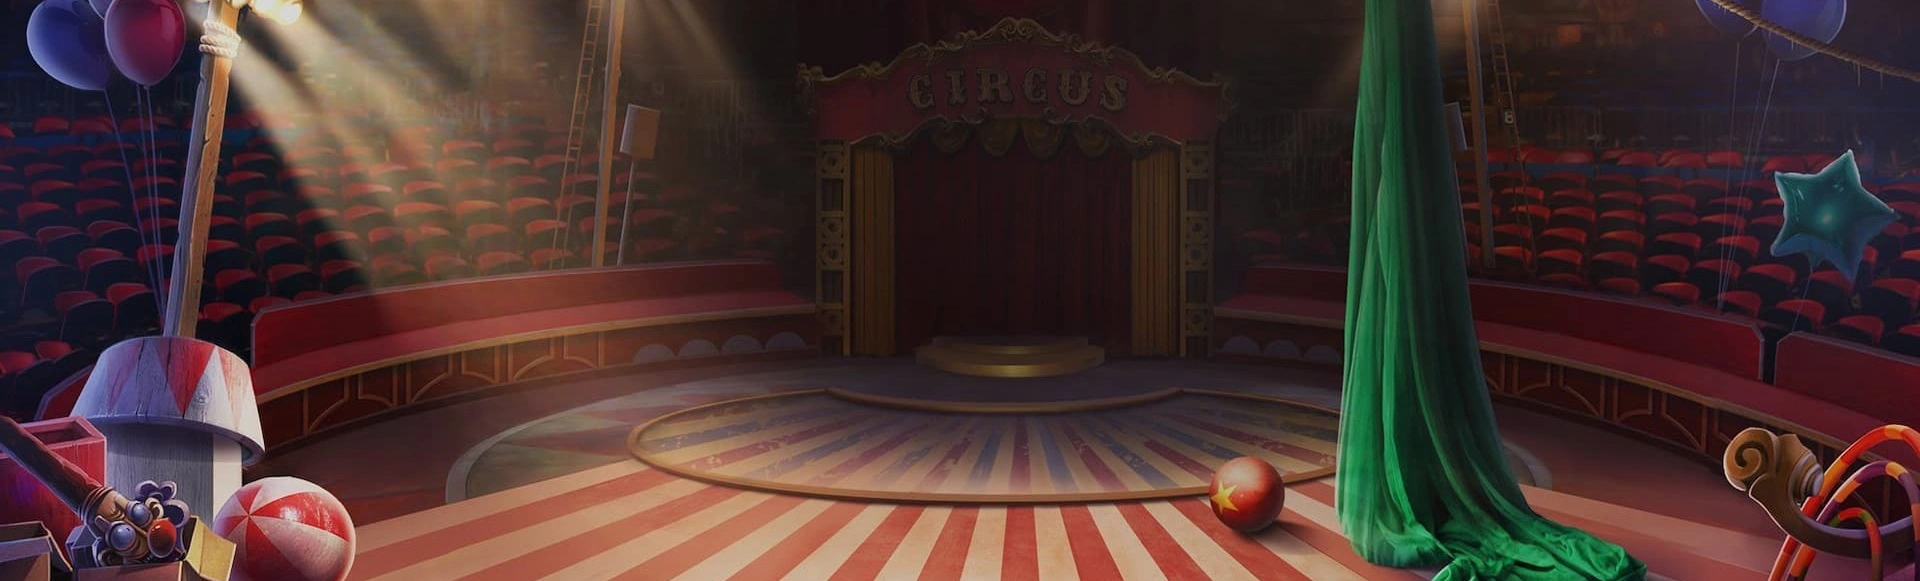 Цирковое шоу "КороЛЕВство": Волшебство и приключения ждут вас!